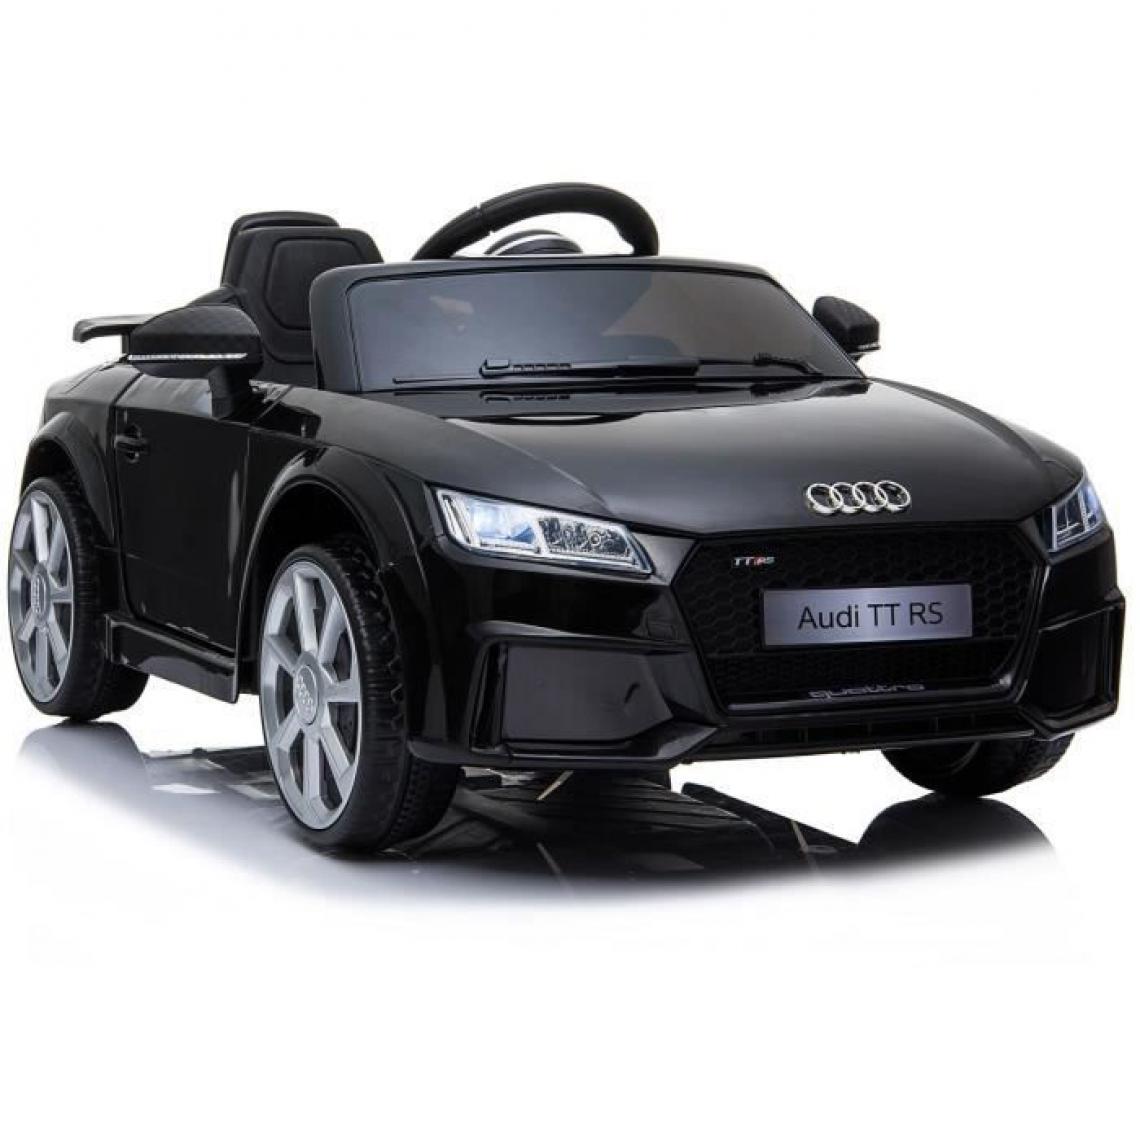 E-Road - Voiture electrique Audi TT RS pour enfant 12V - noir - E-ROAD - Modélisme